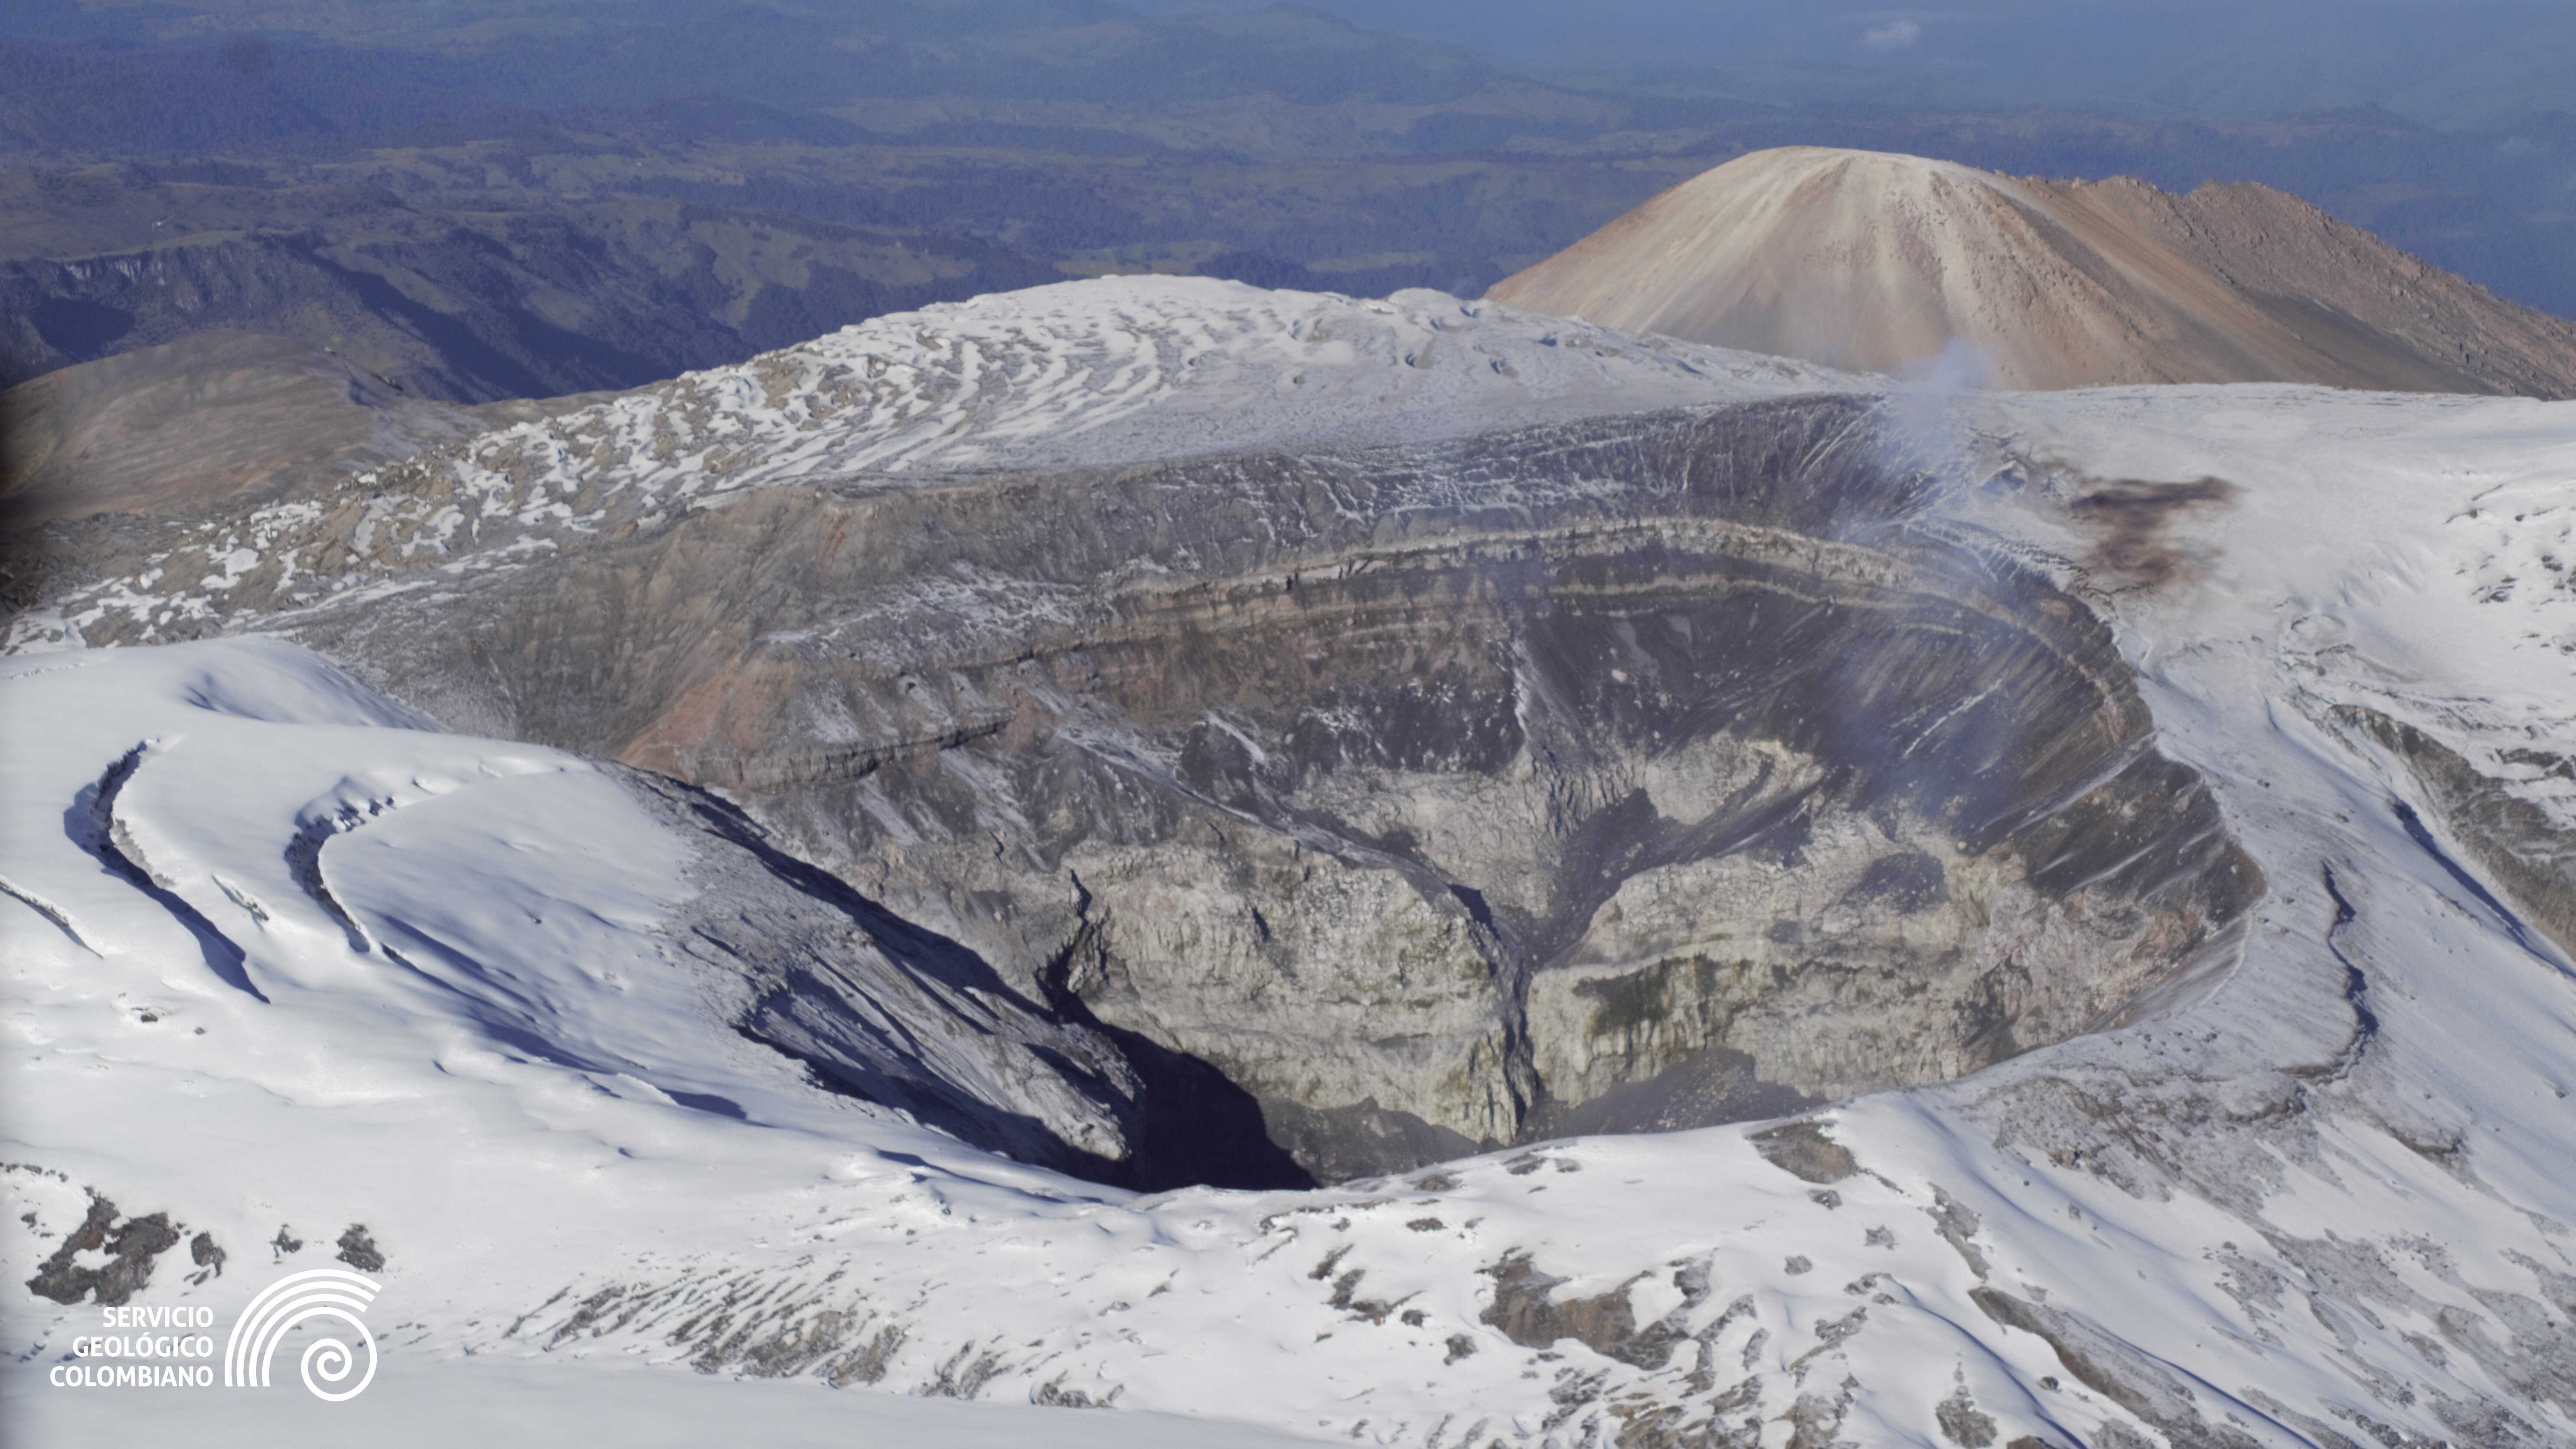 Servicio Geológico Colombiano pide estar preparados ante una posible erupción del nevado del Ruiz